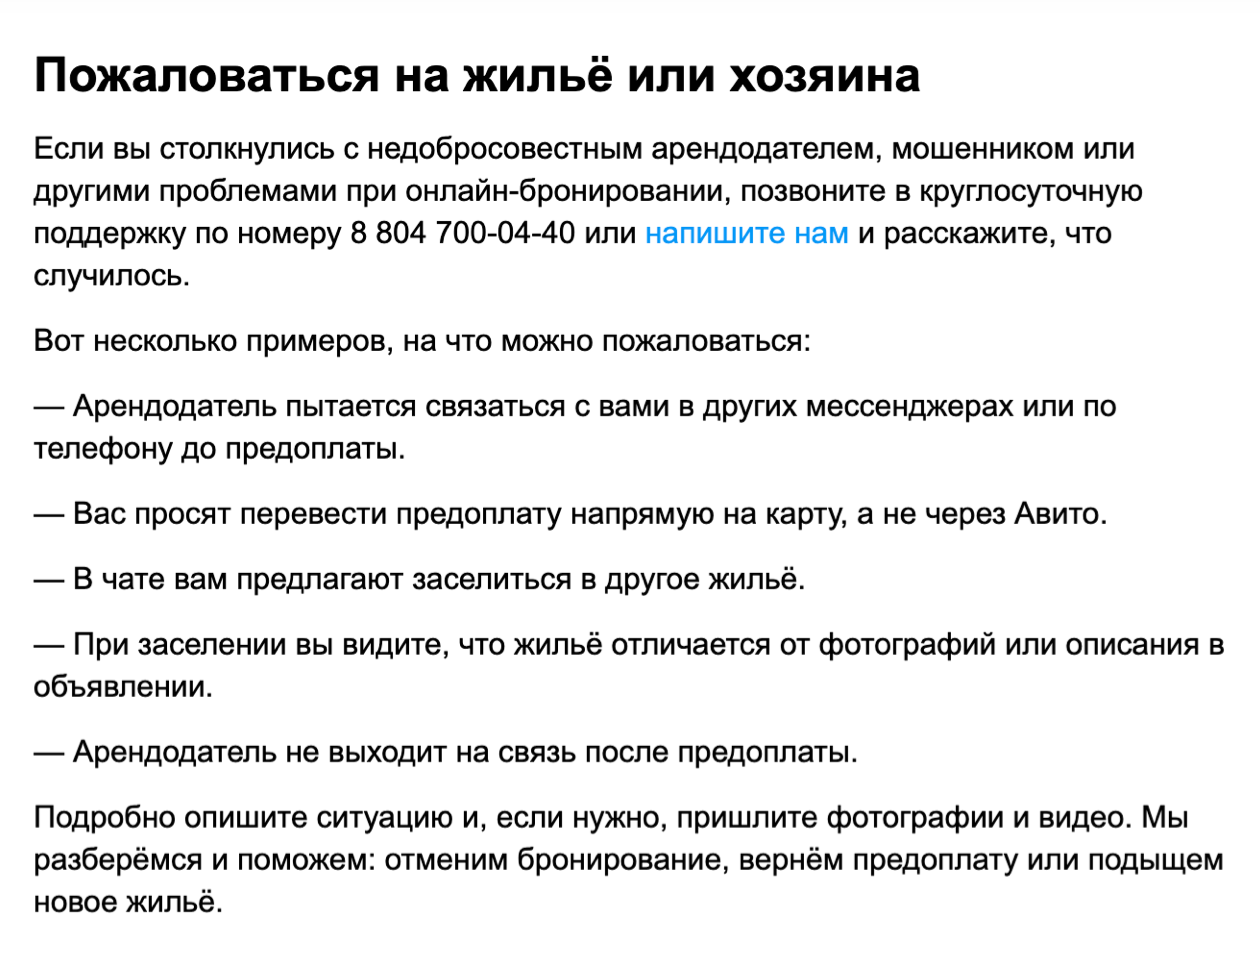 Служба поддержки обещает решать спорные вопросы между хозяевами и арендаторами. Источник: avito.ru